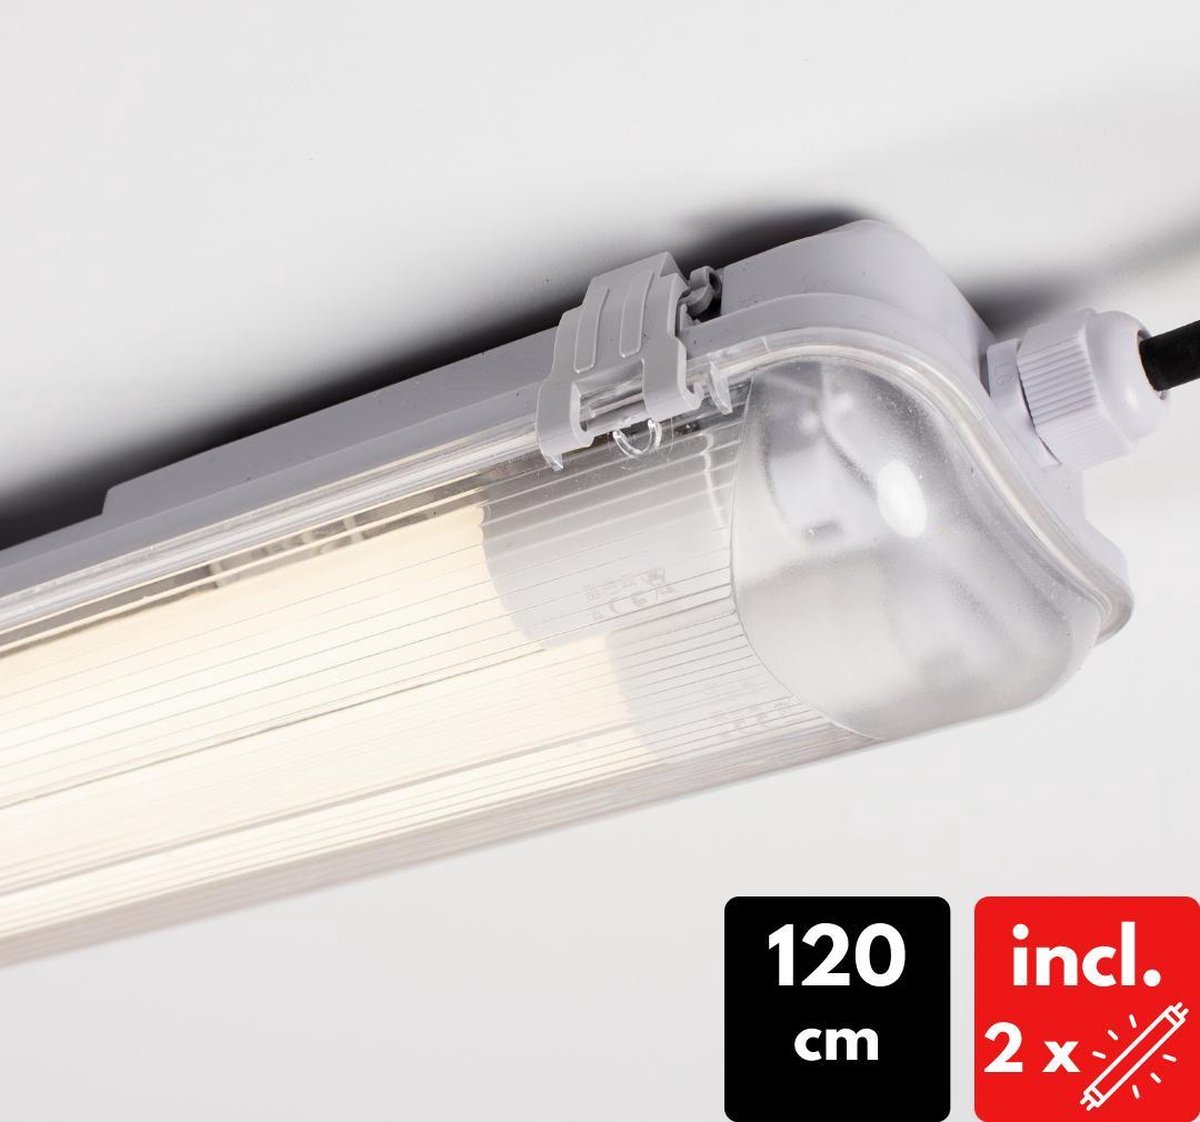 Luminaire LED Proventa TL complet avec 2 x tube LED de 120 cm